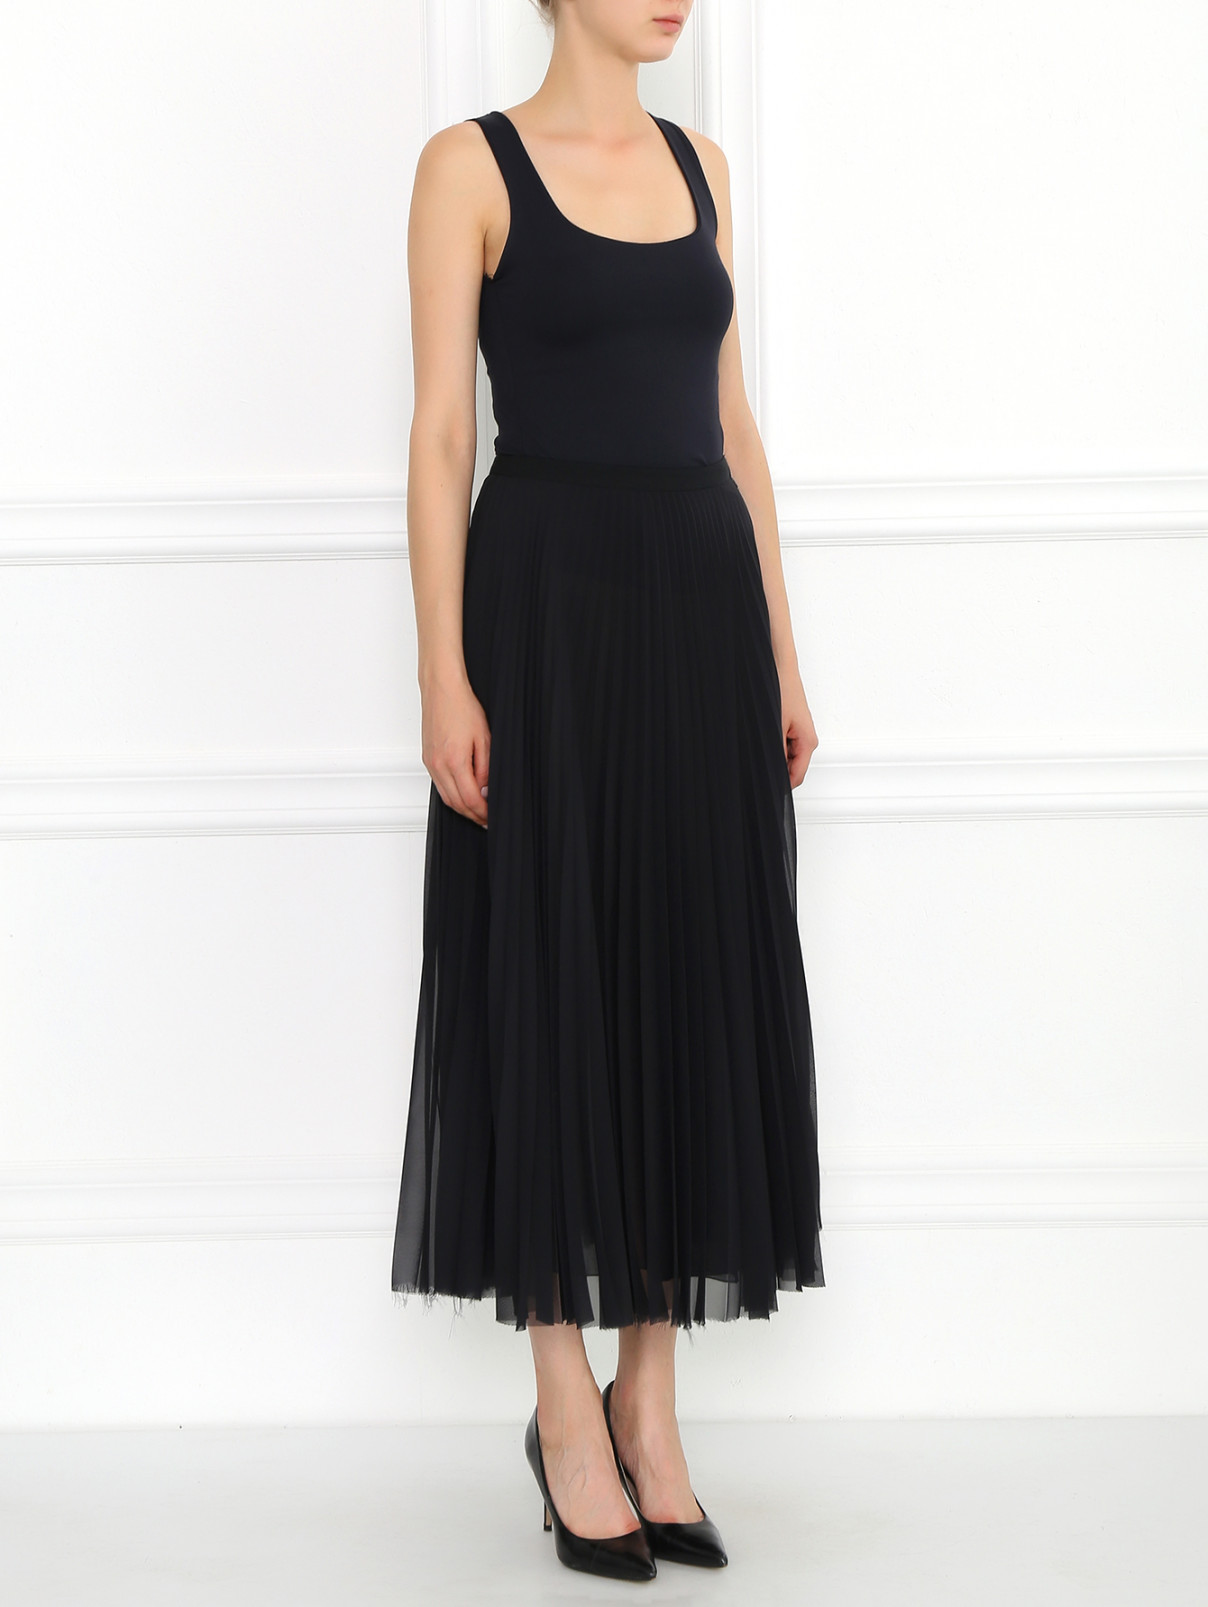 Гофрированная юбка-миди из полупрозрачной ткани Andrew GN  –  Модель Общий вид  – Цвет:  Черный